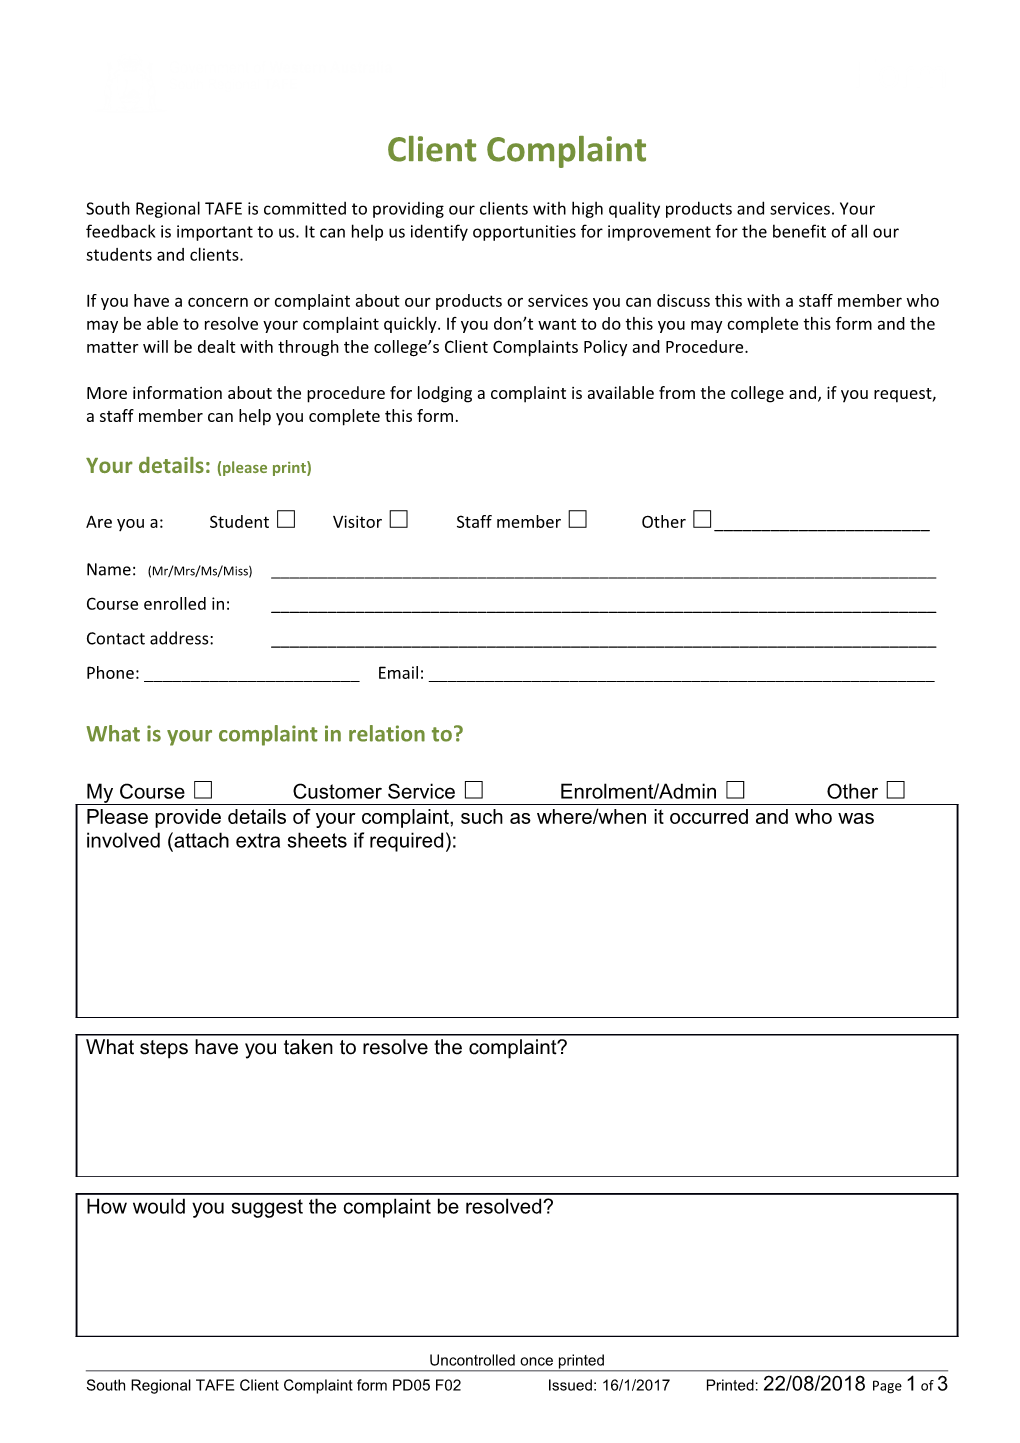 Form: Client Complaint